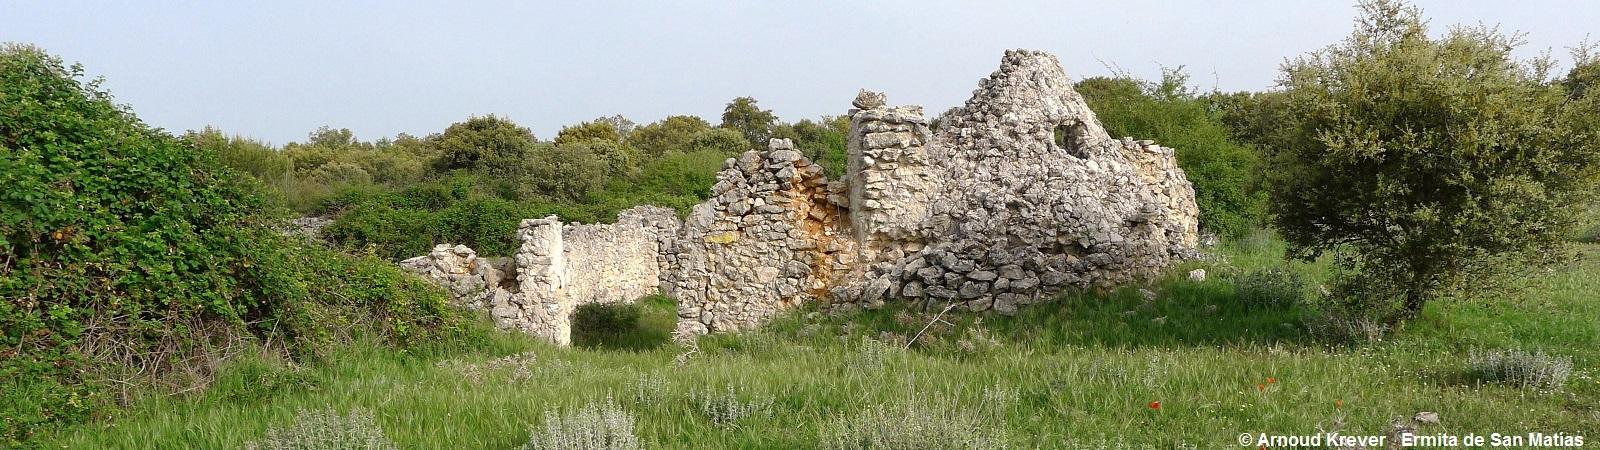 15Lana (1329) Ermita de San Matías, ruinas